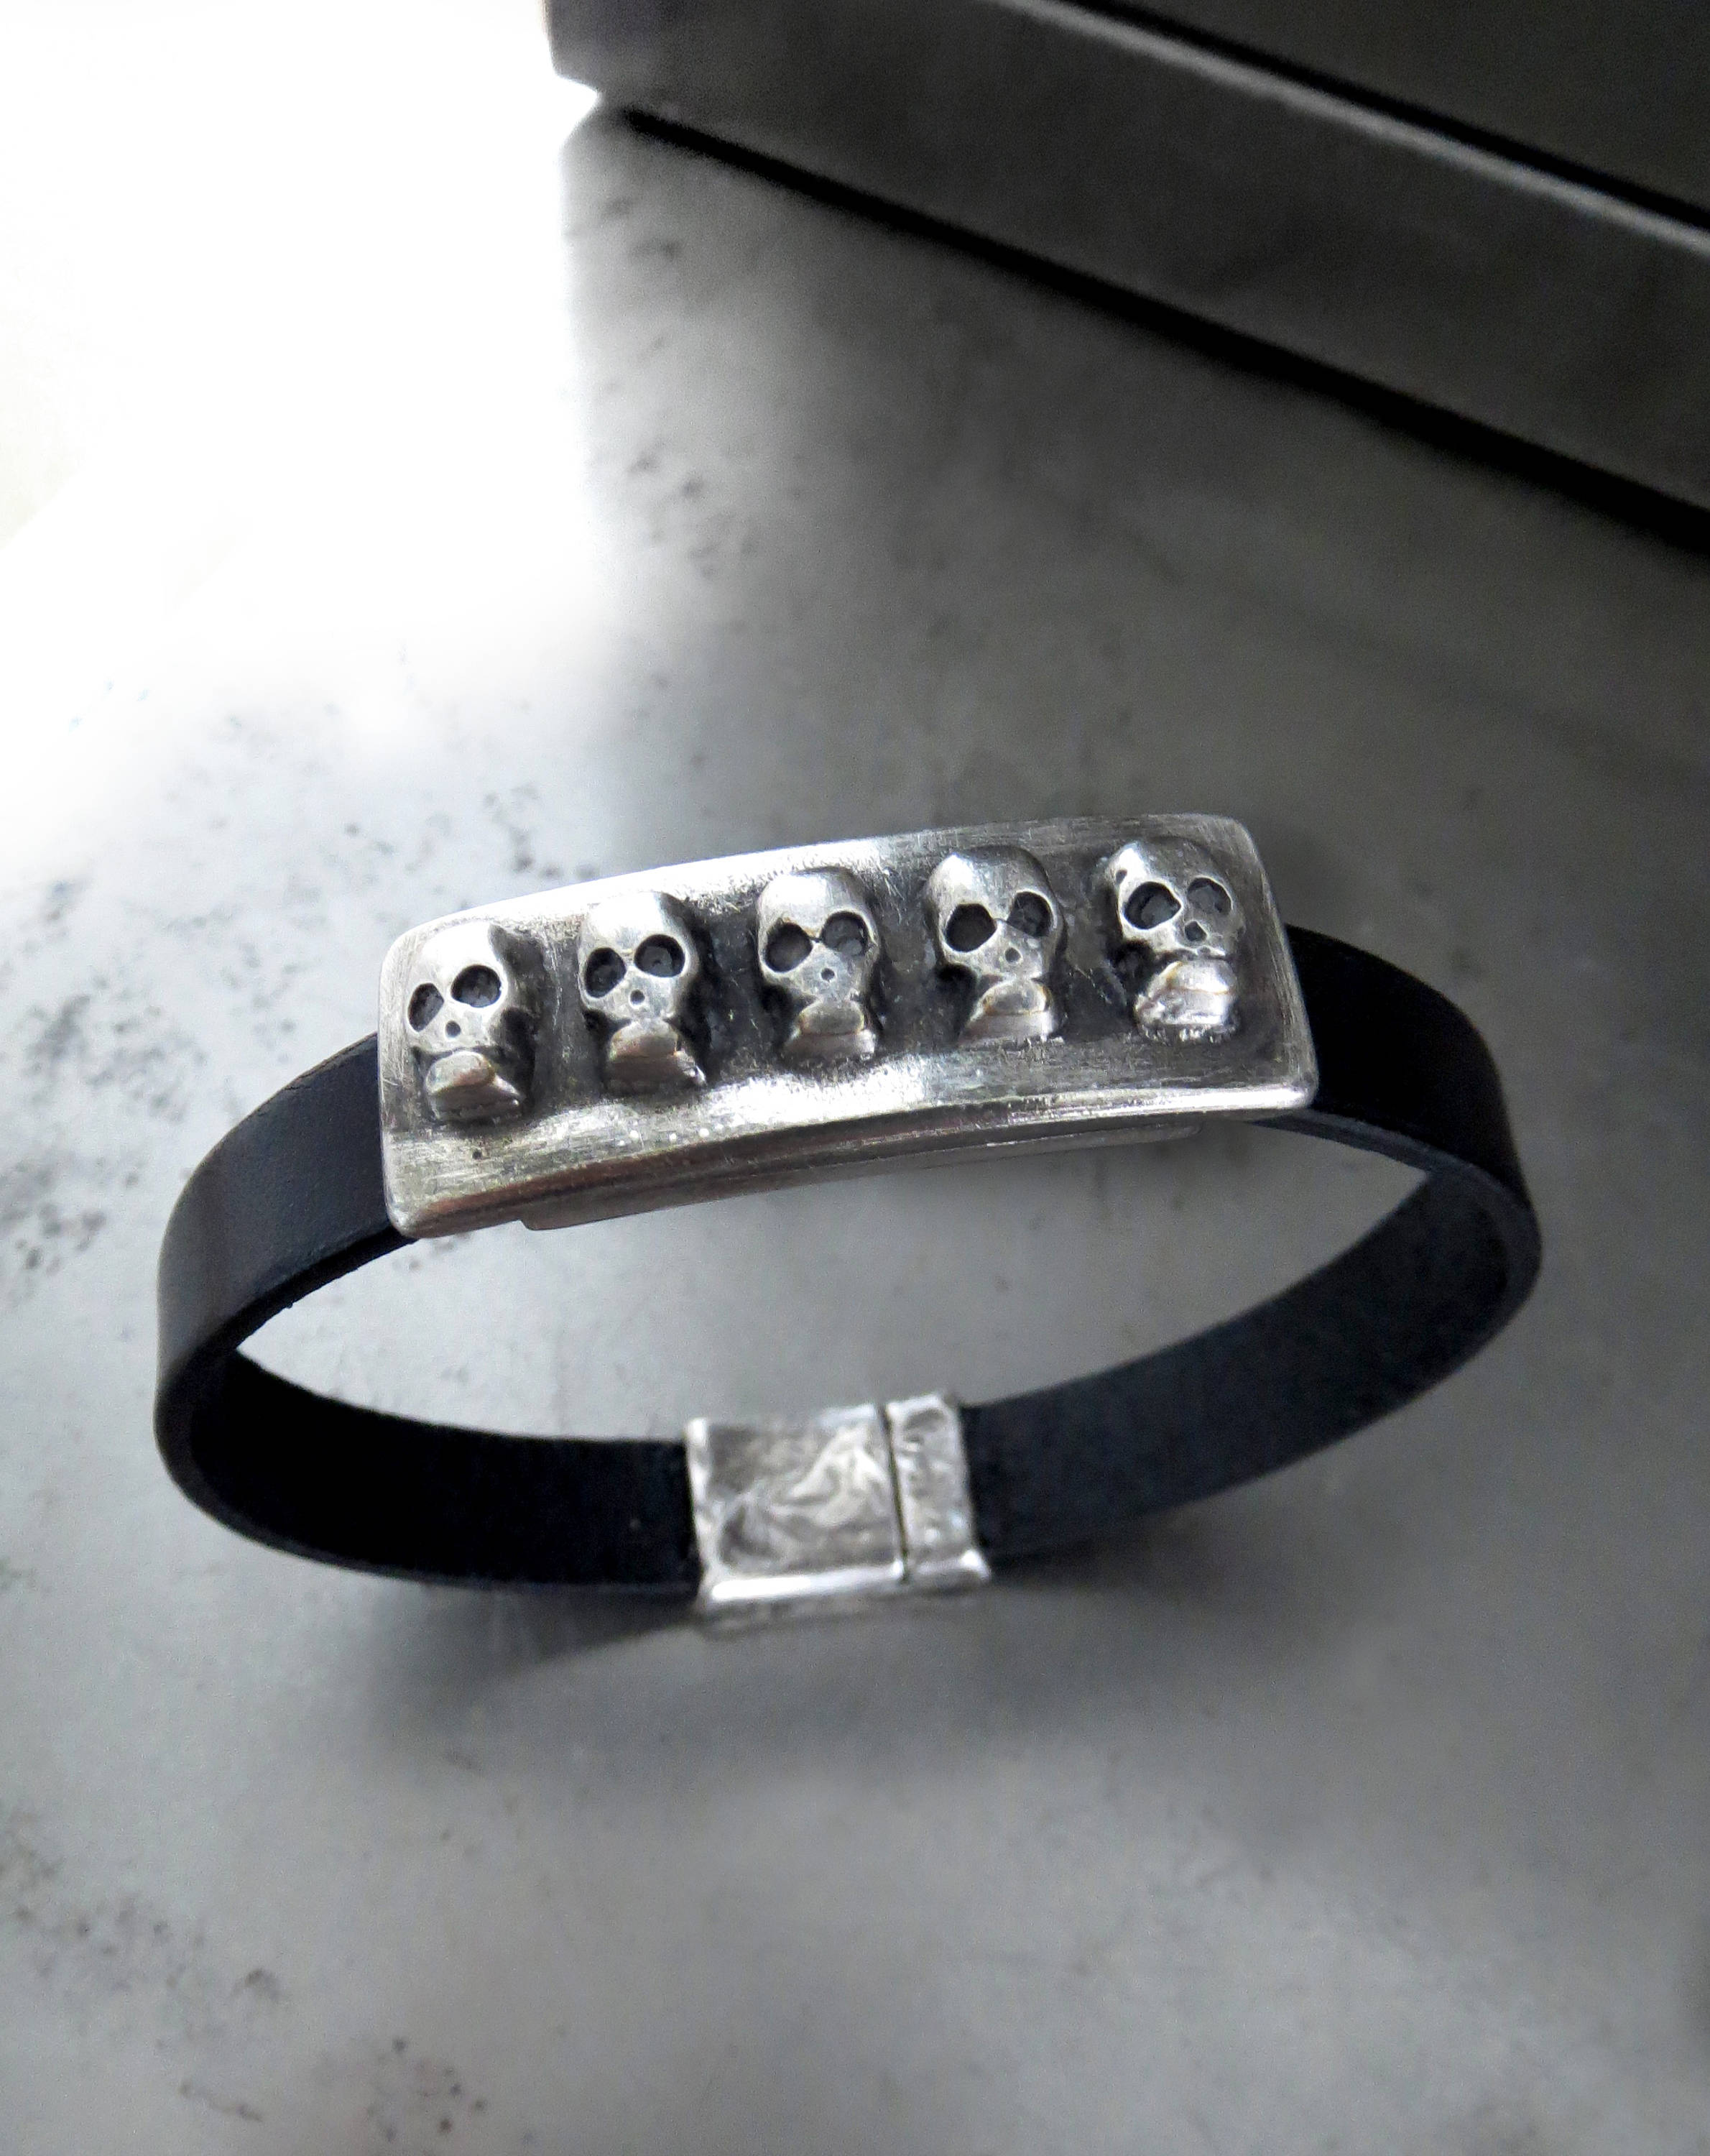 FIVE SKULLS - Black Leather Bracelet with Antiqued Silver Skulls